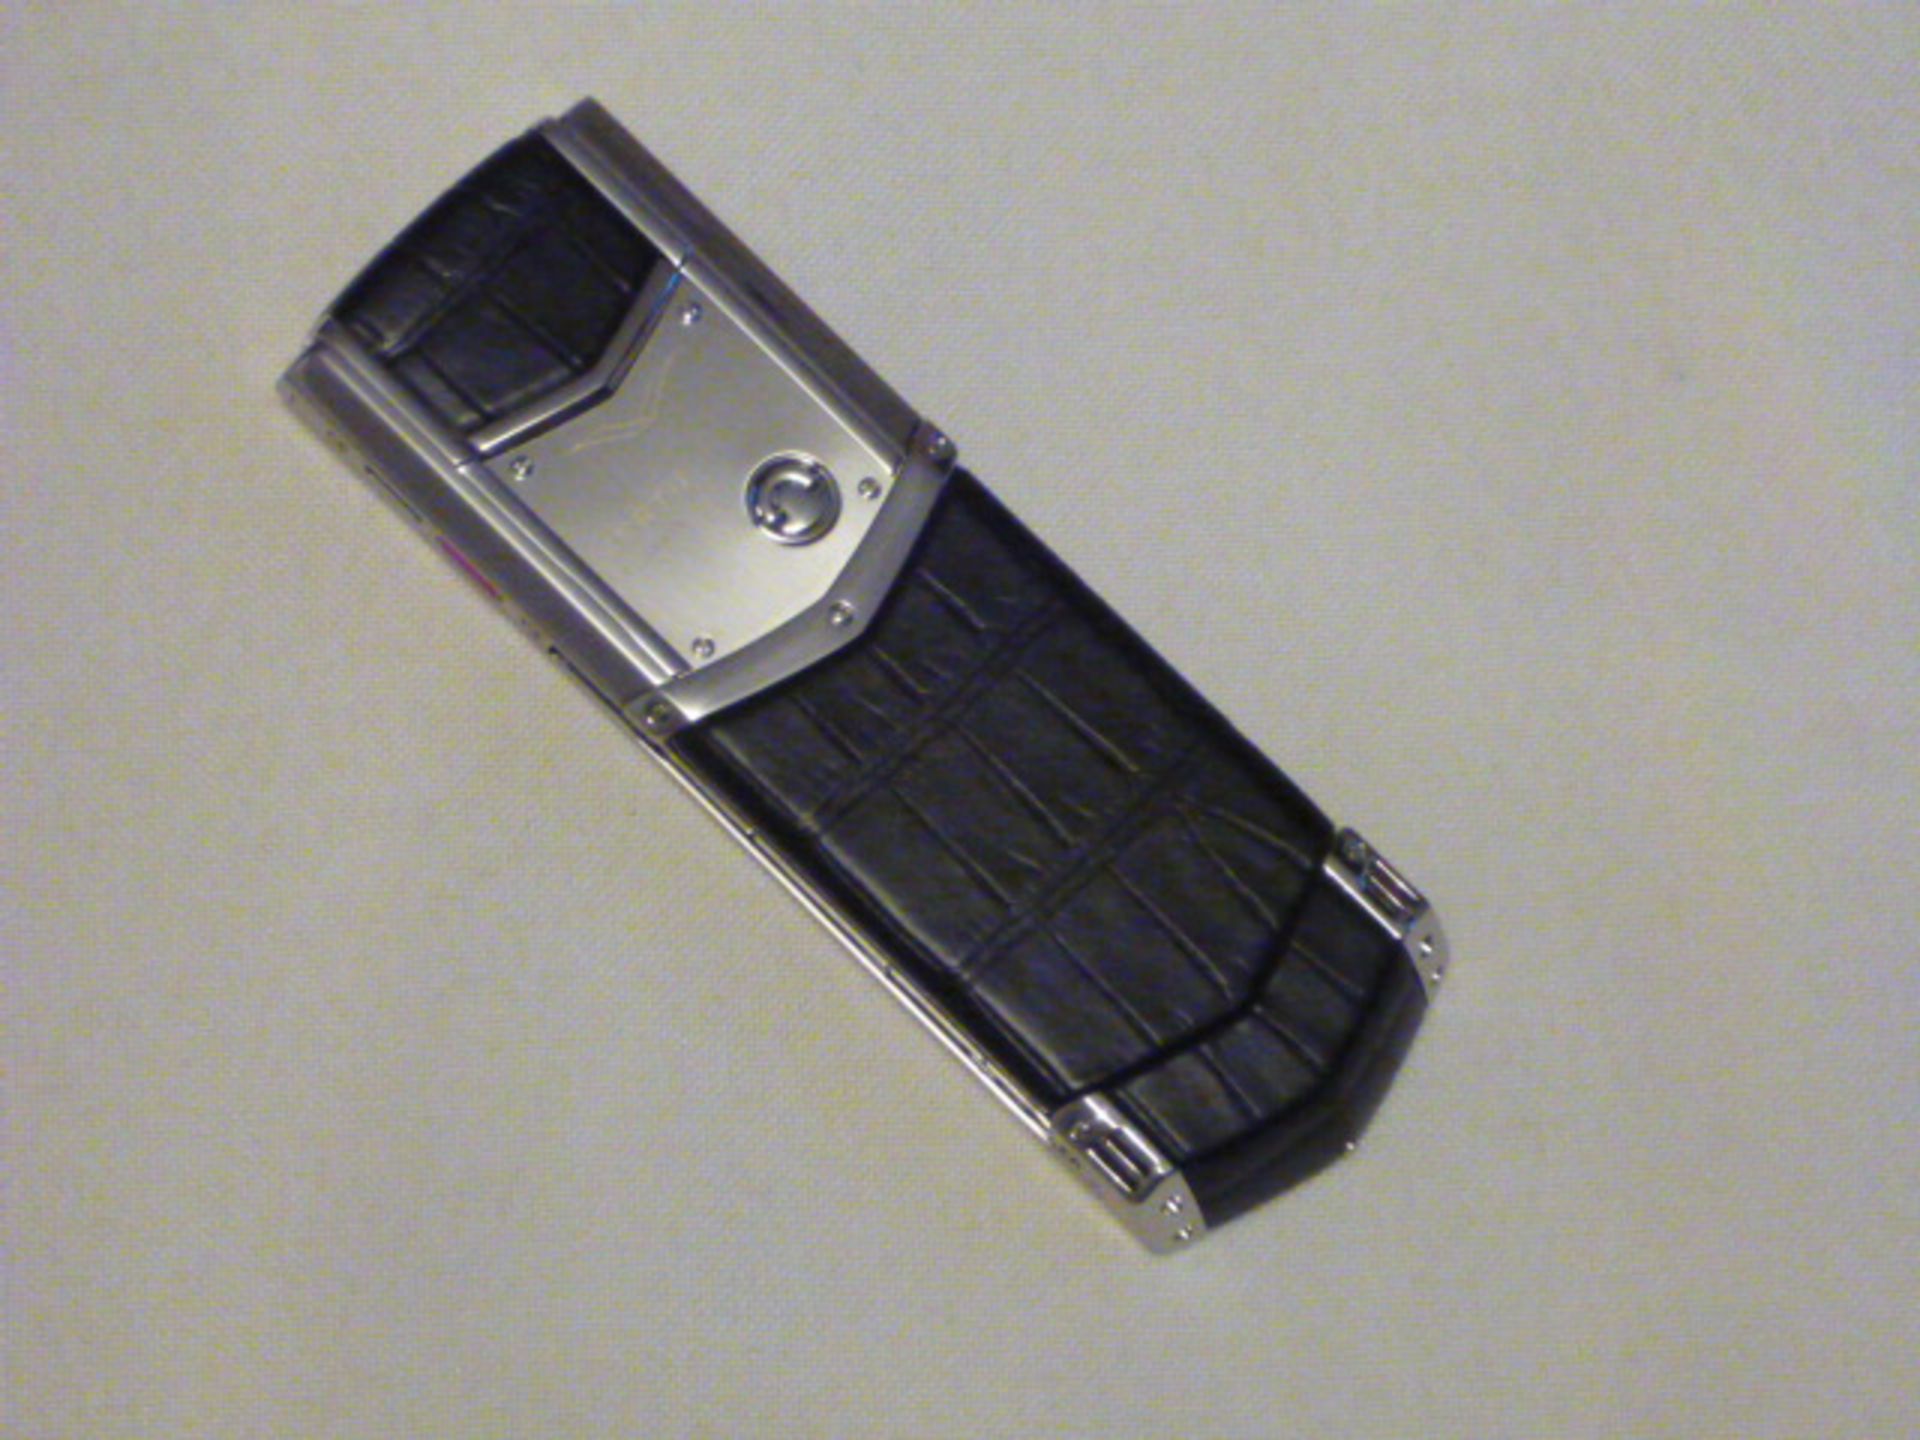 Vertu Signature S Phone (Cinderella Version) Stainless Steel with Black Alligator Skin Back. S/N S- - Bild 2 aus 3